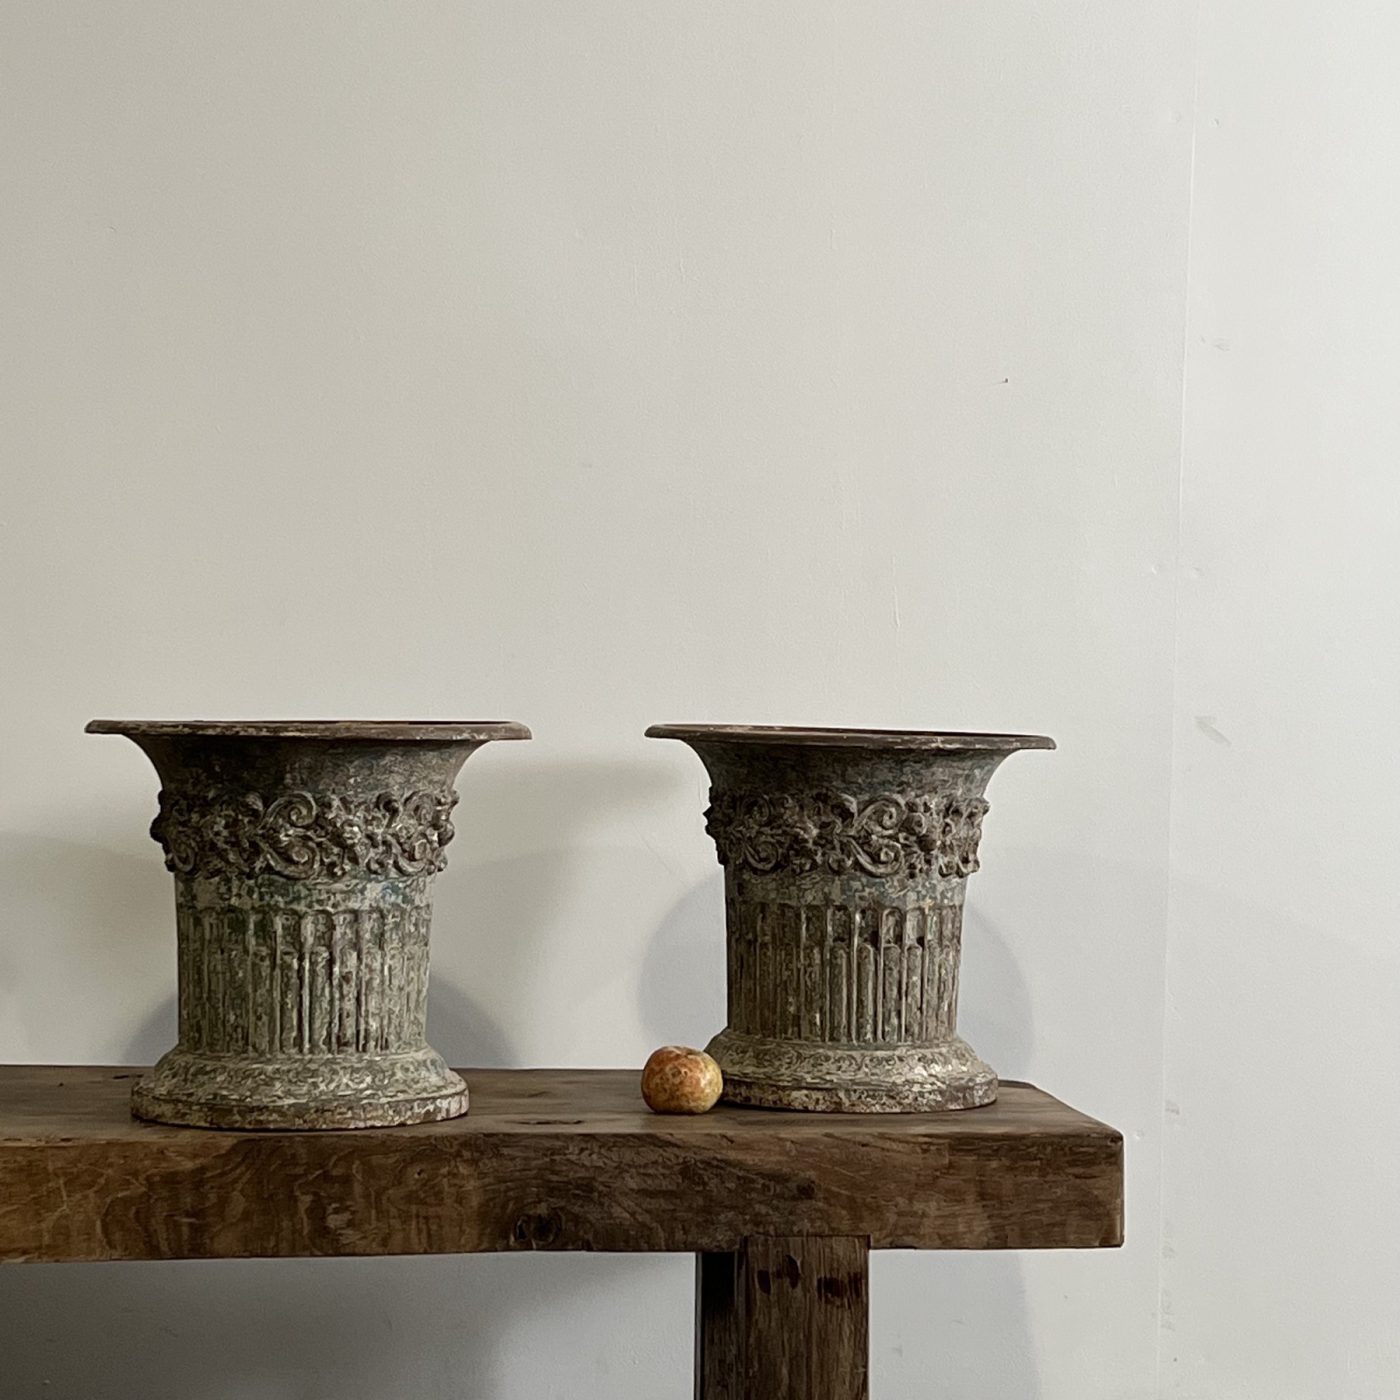 objet-vagabond-garden-urns0008